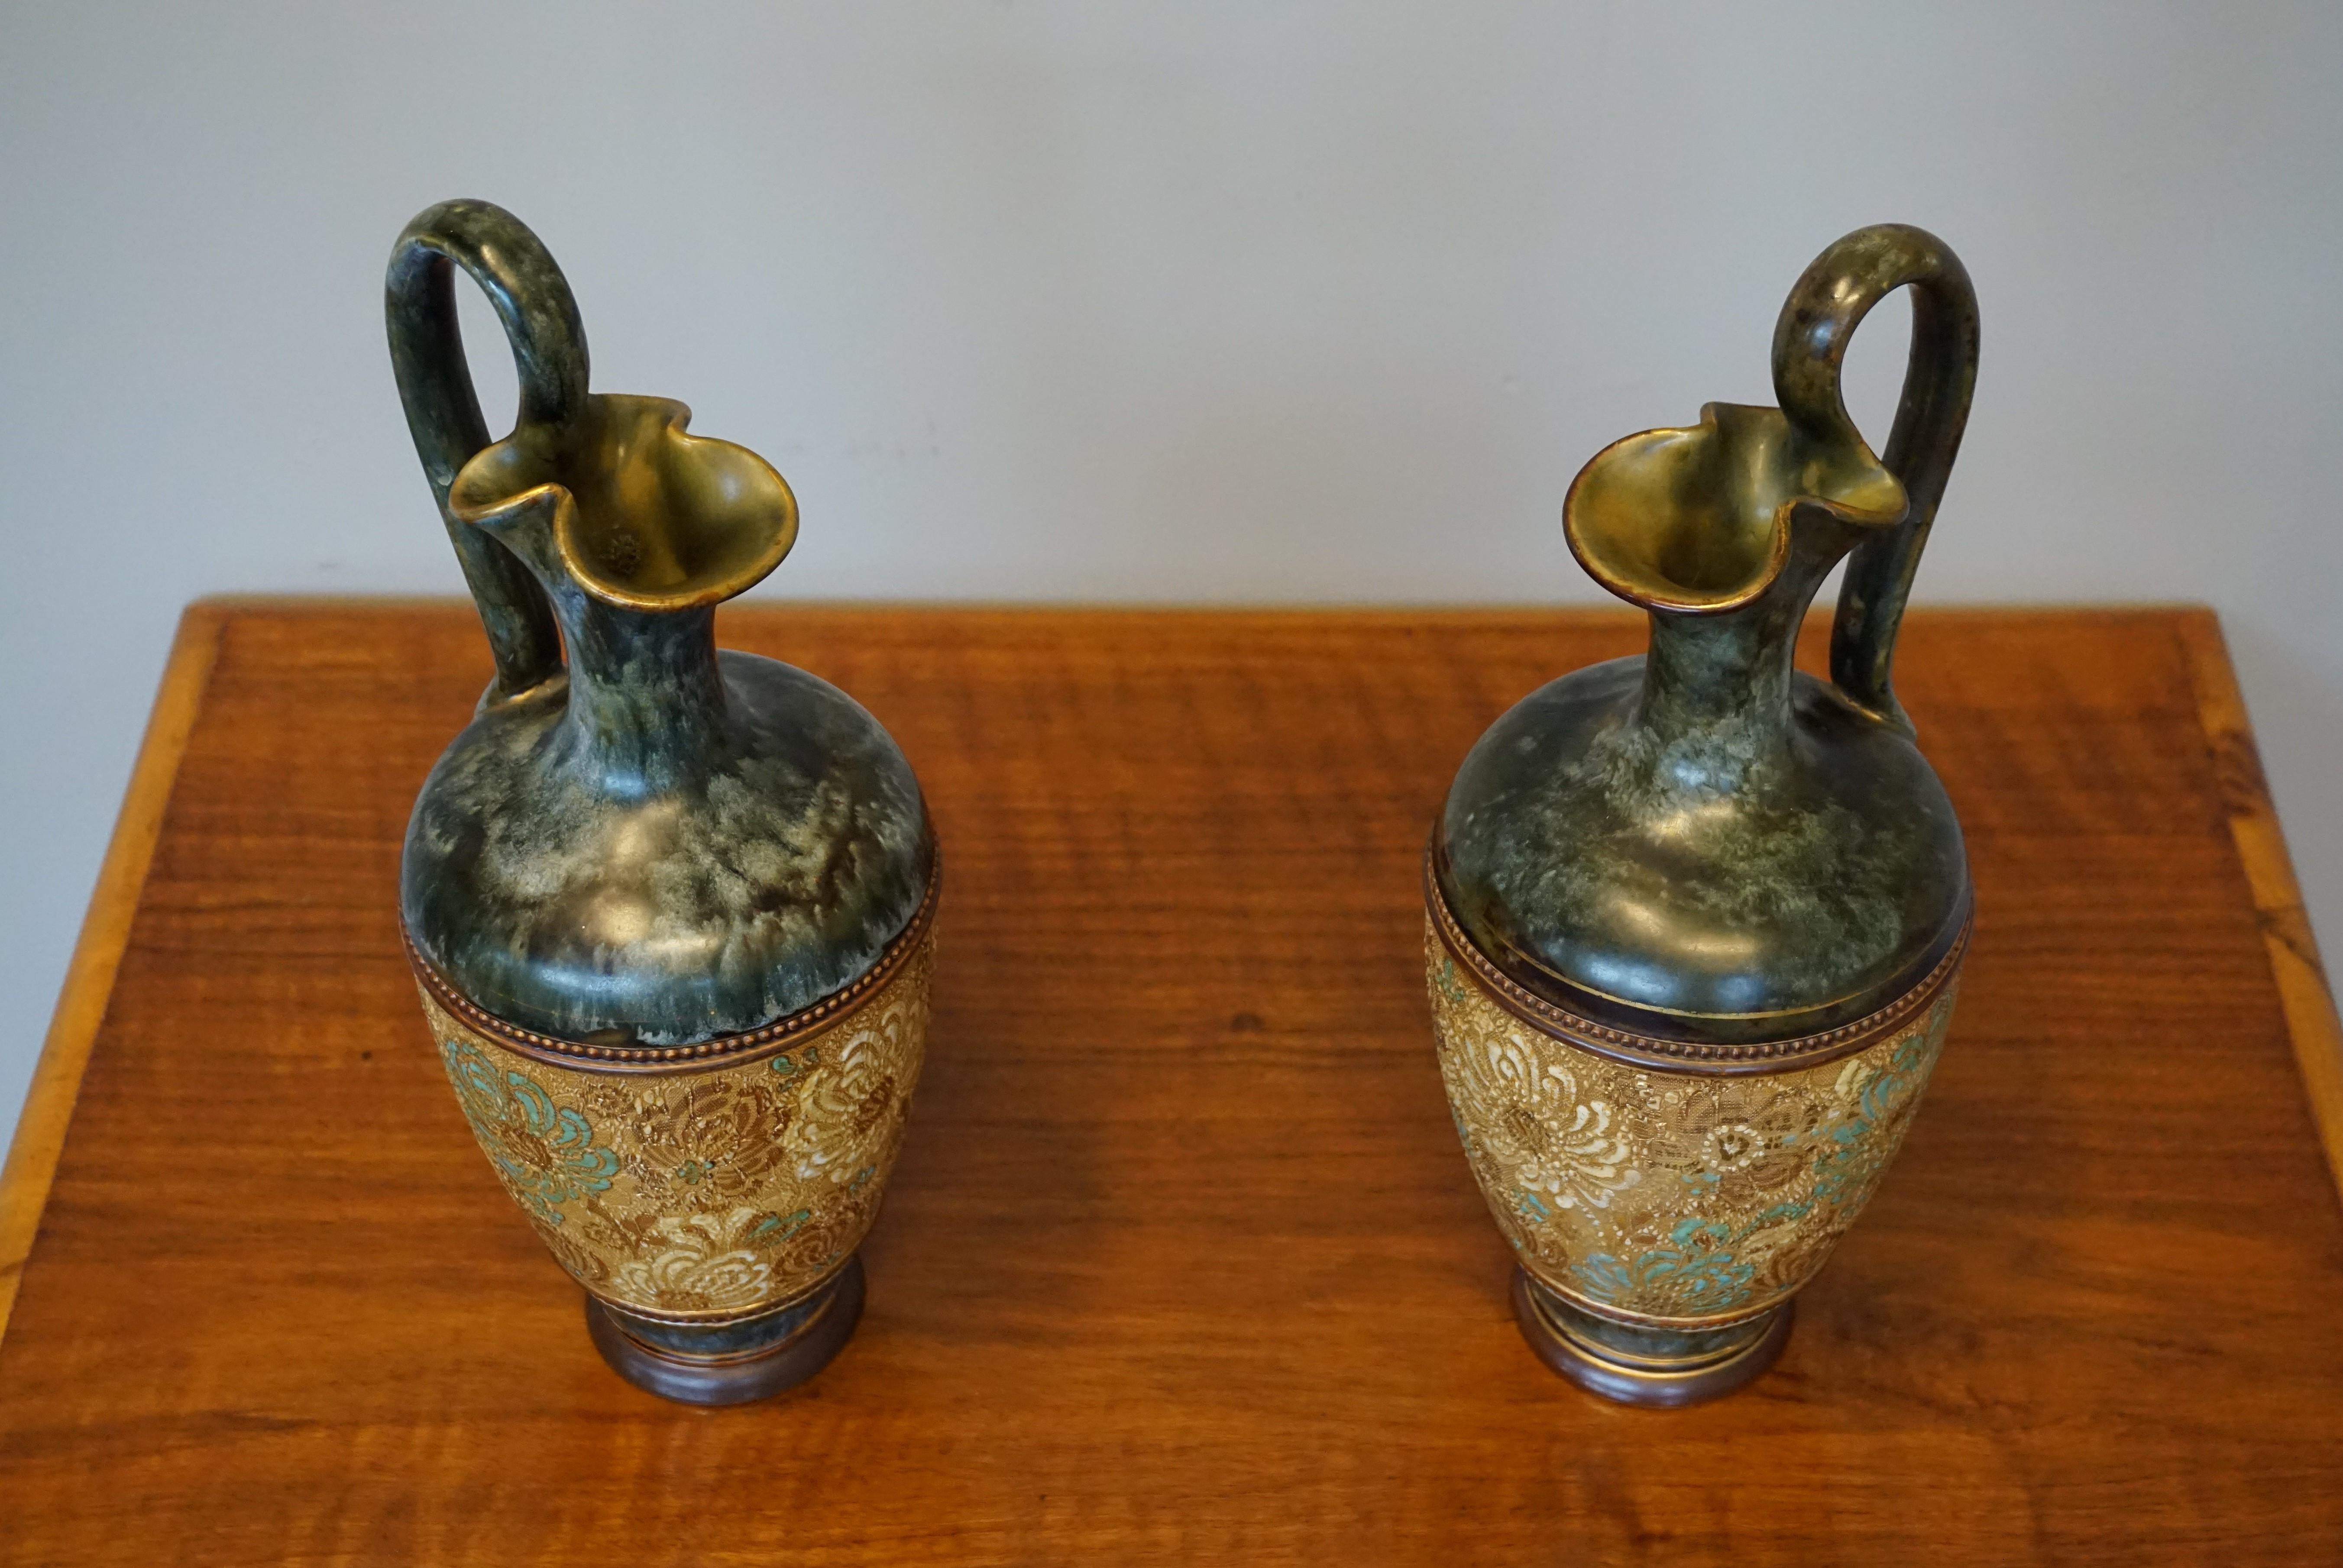 Wunderschönes Paar handgefertigter Vasen aus dem 19. Jahrhundert.

Wenn es um wirklich stilvolle und schöne Töpferwaren geht, ist nichts so attraktiv wie die Stücke, die um die Jahrhundertwende in Europa hergestellt wurden. Die Entwürfe, die